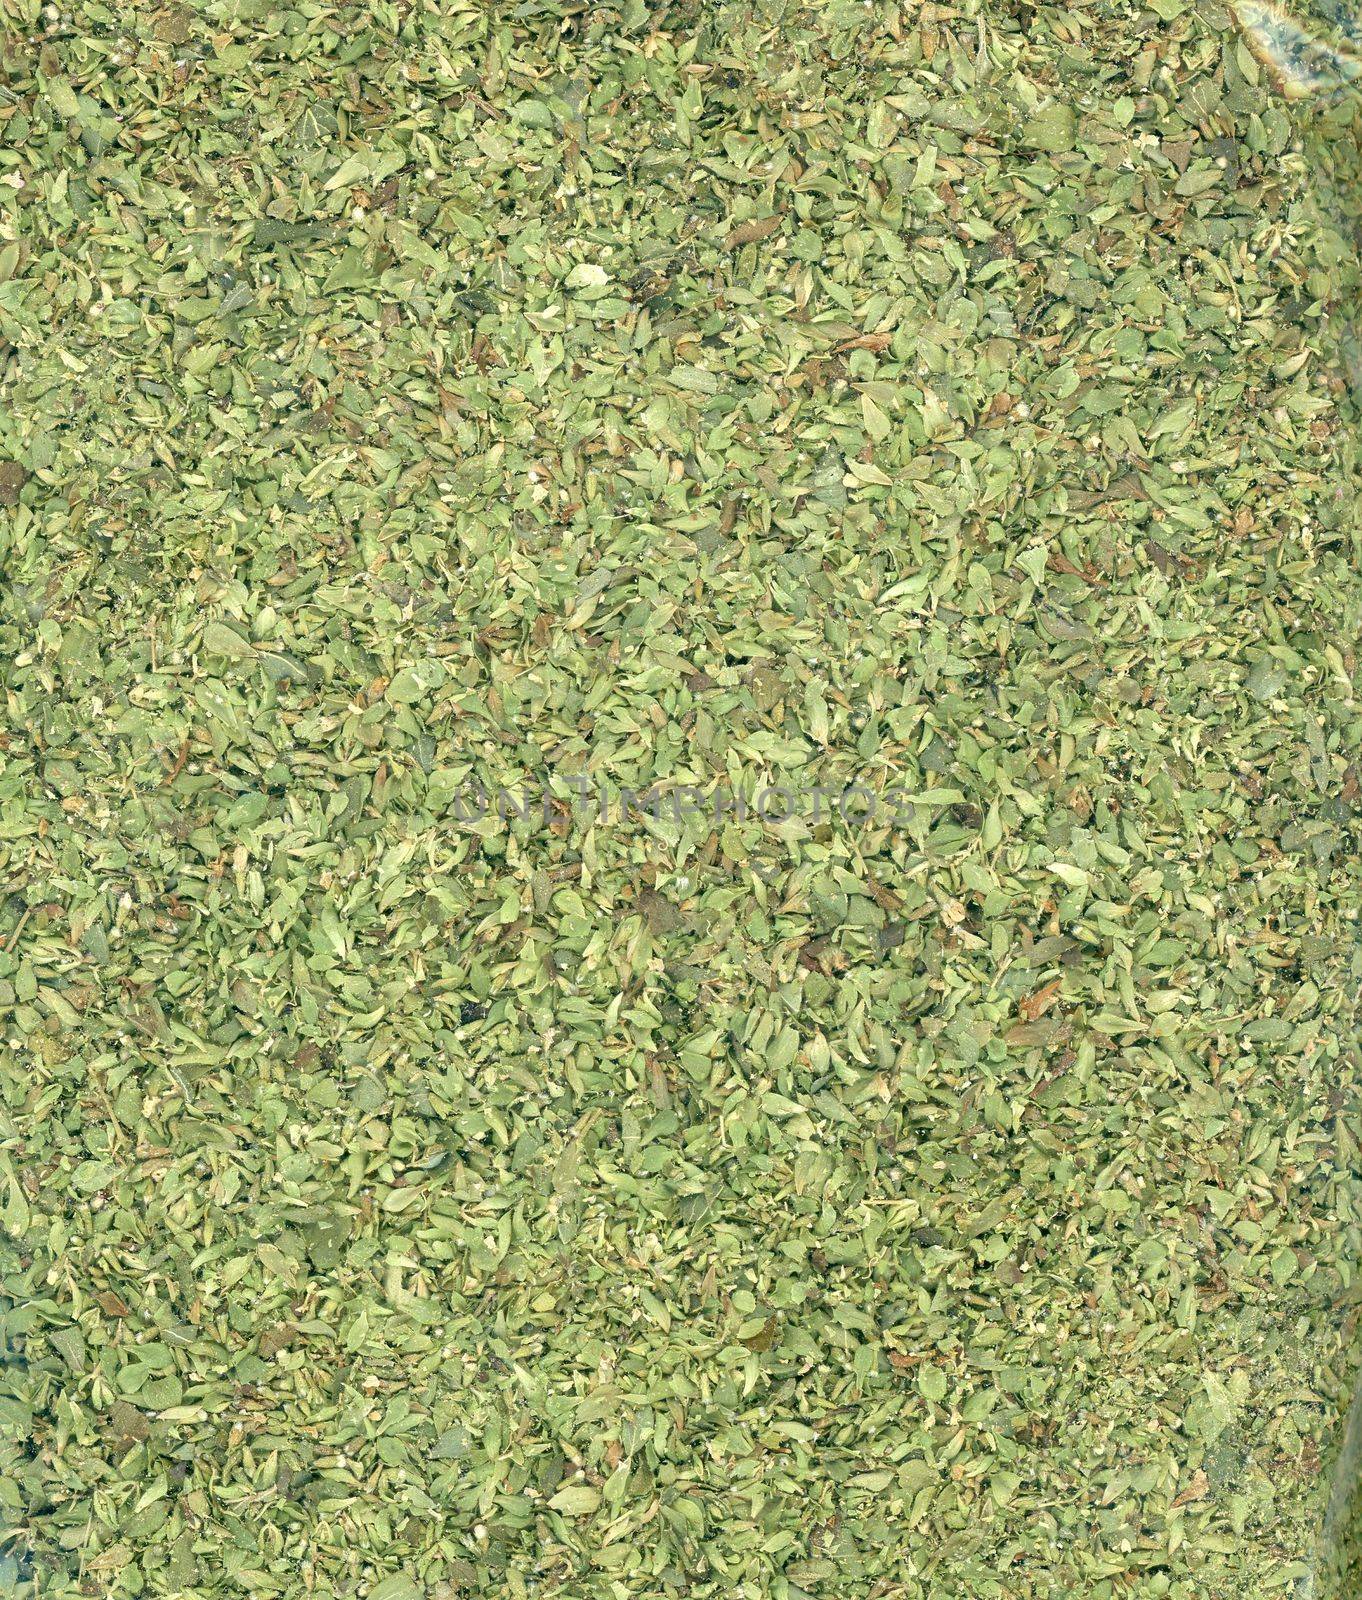 Oregano (Origanum vulgare) herb aka wild marjoram or sweet marjoram